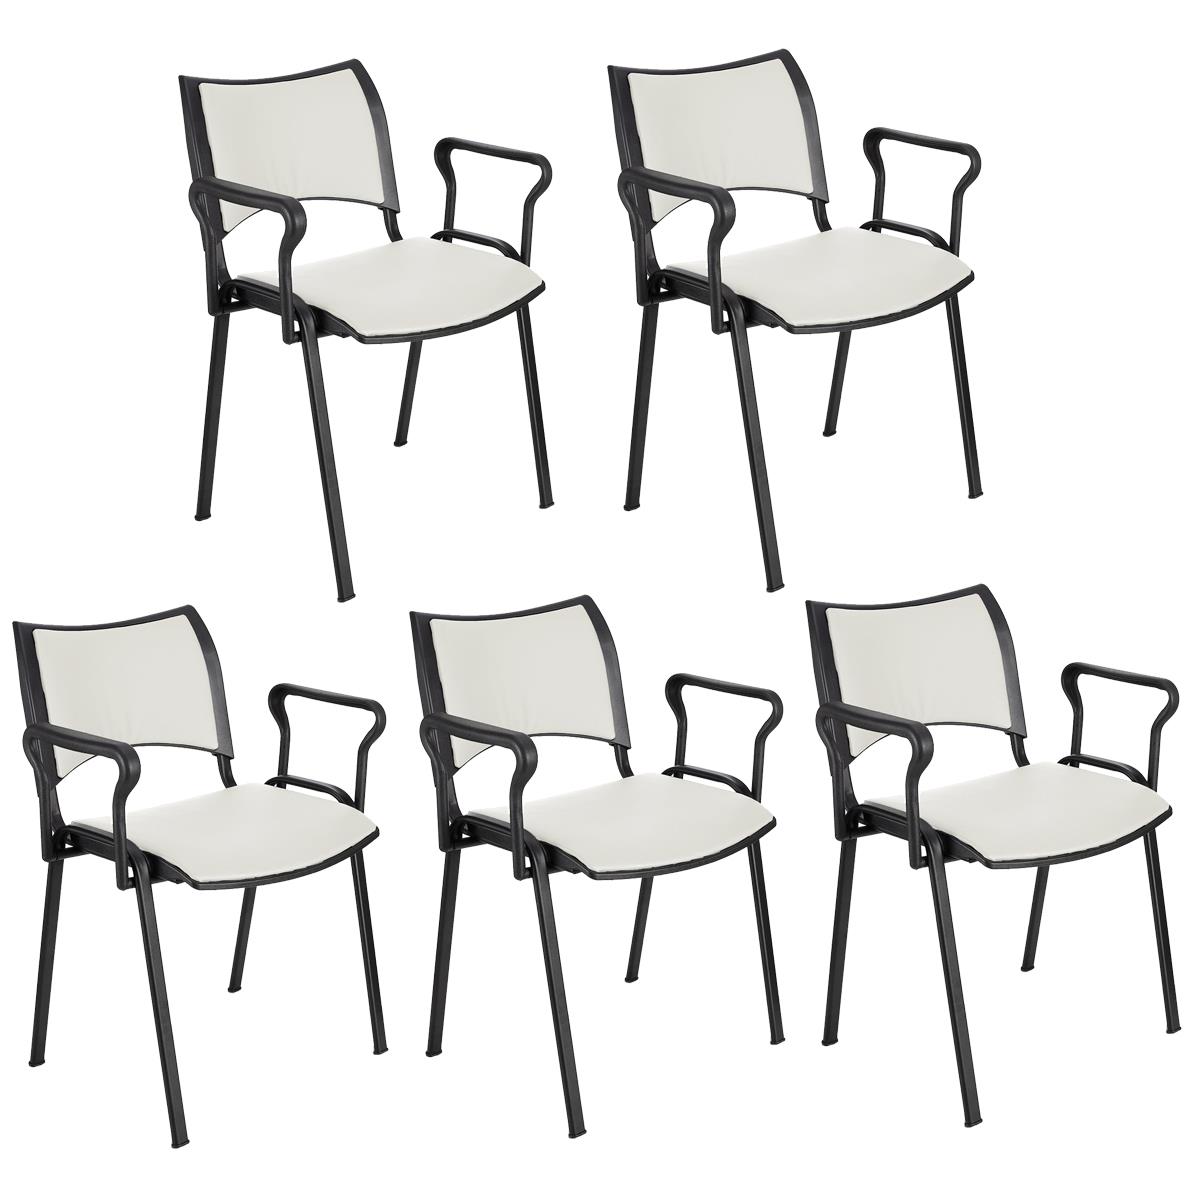 Lote 5 Cadeiras de Visita ROMEL PELE COM BRAÇOS, Empilhável, Pernas Pretas, Branco